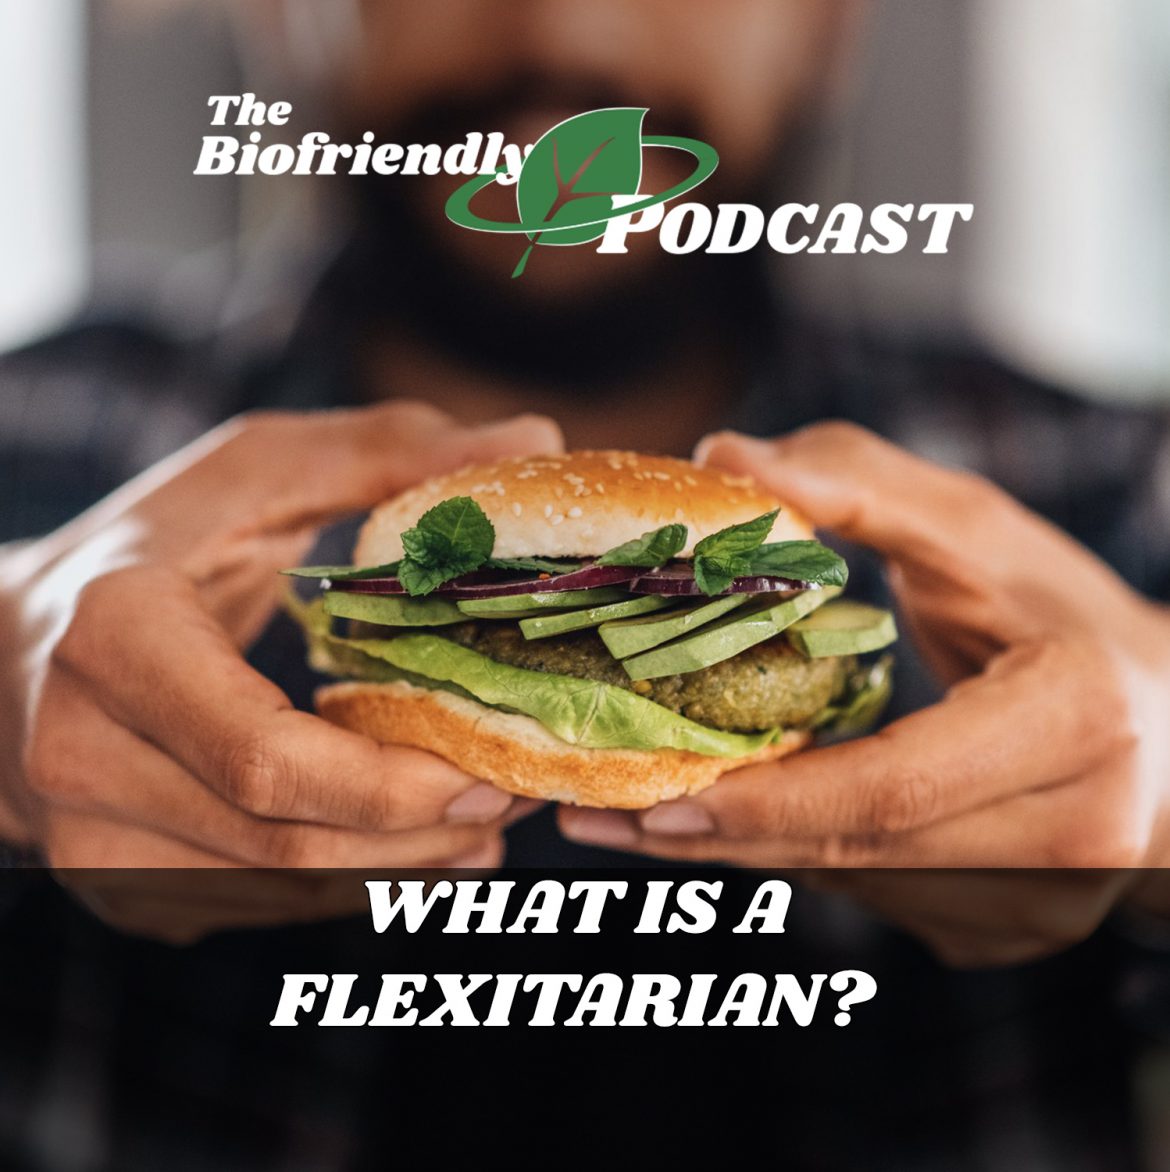 What is a Flexitarian?